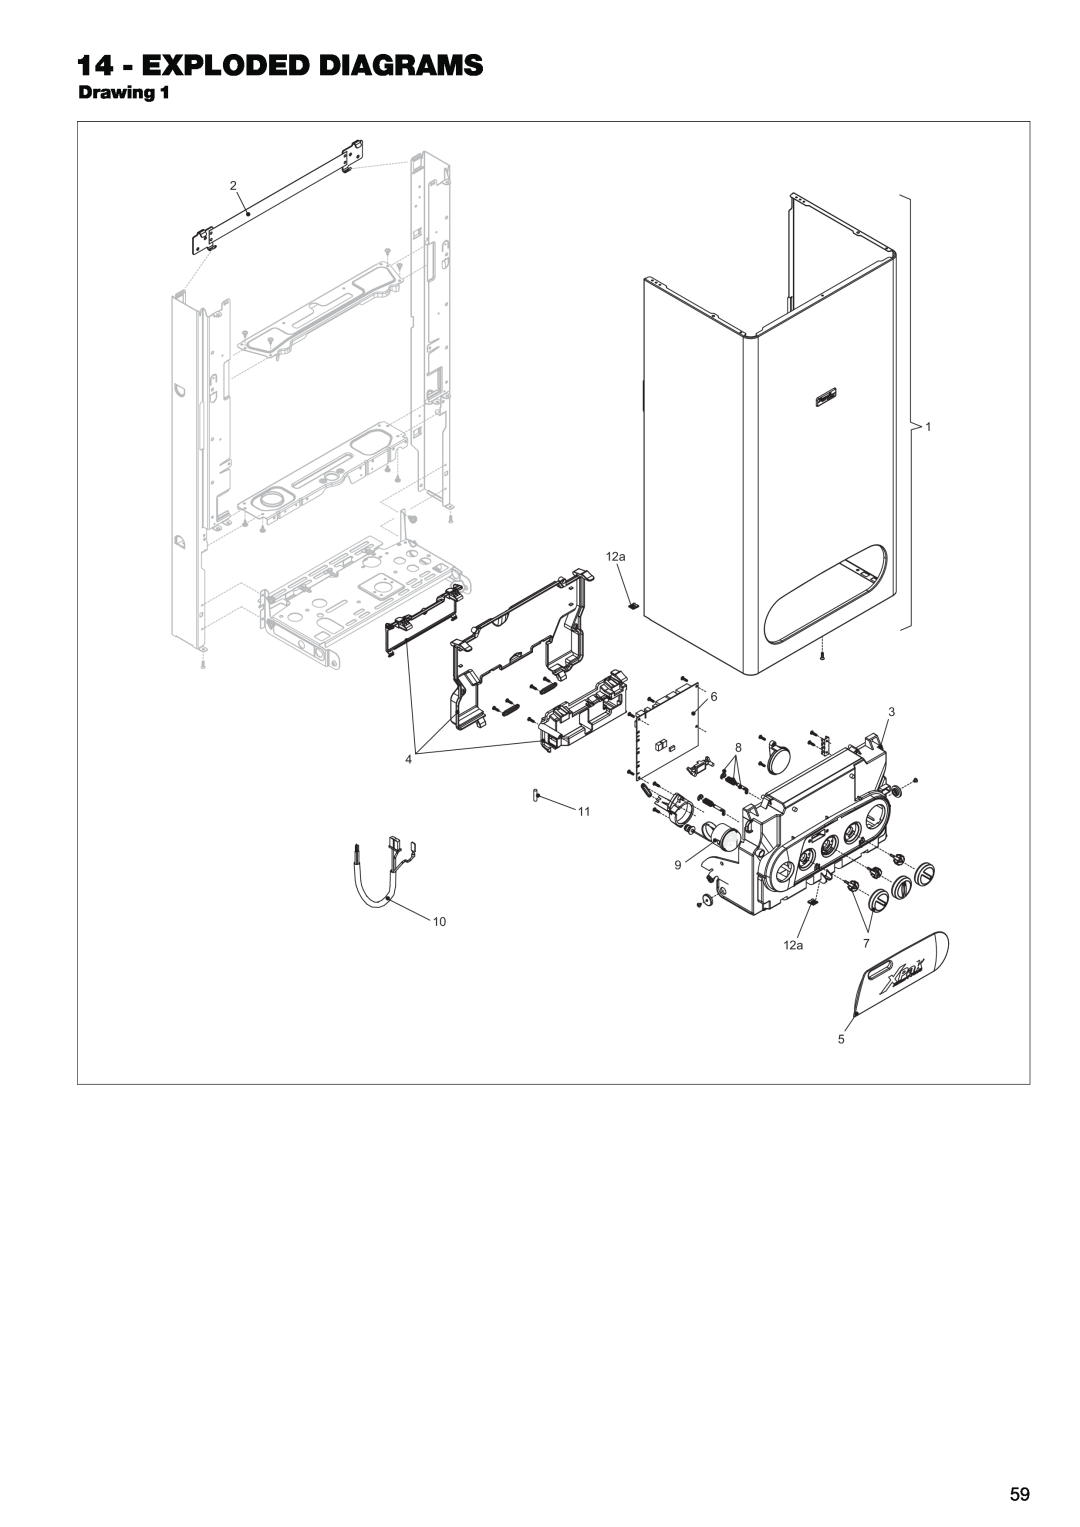 Raypak 120, 85 manual Exploded Diagrams, Drawing 